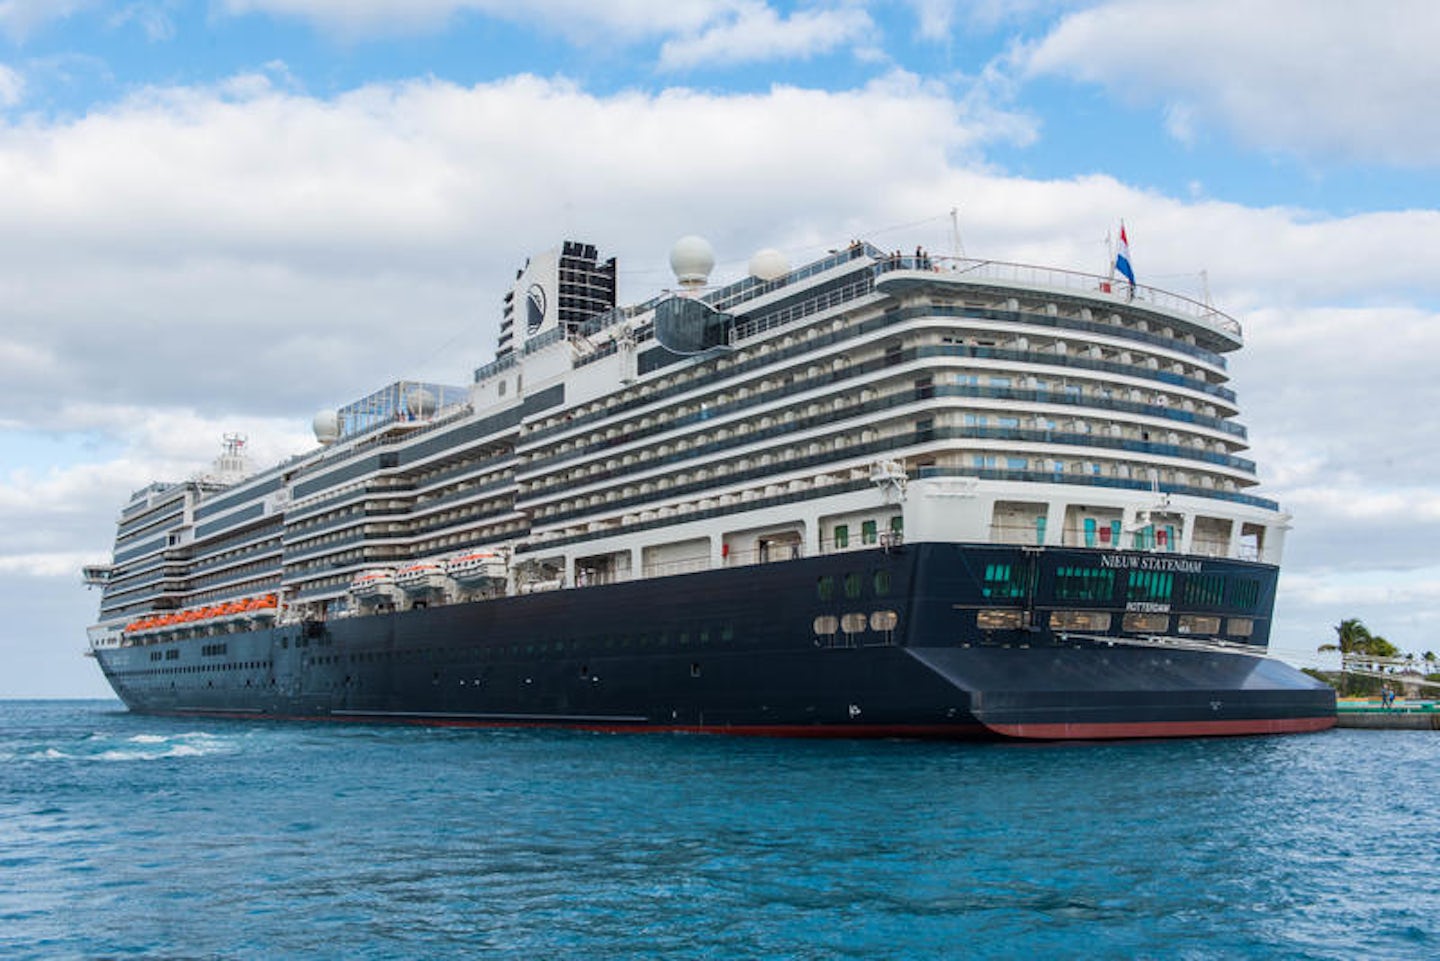 holland america cruise ship nieuw statendam